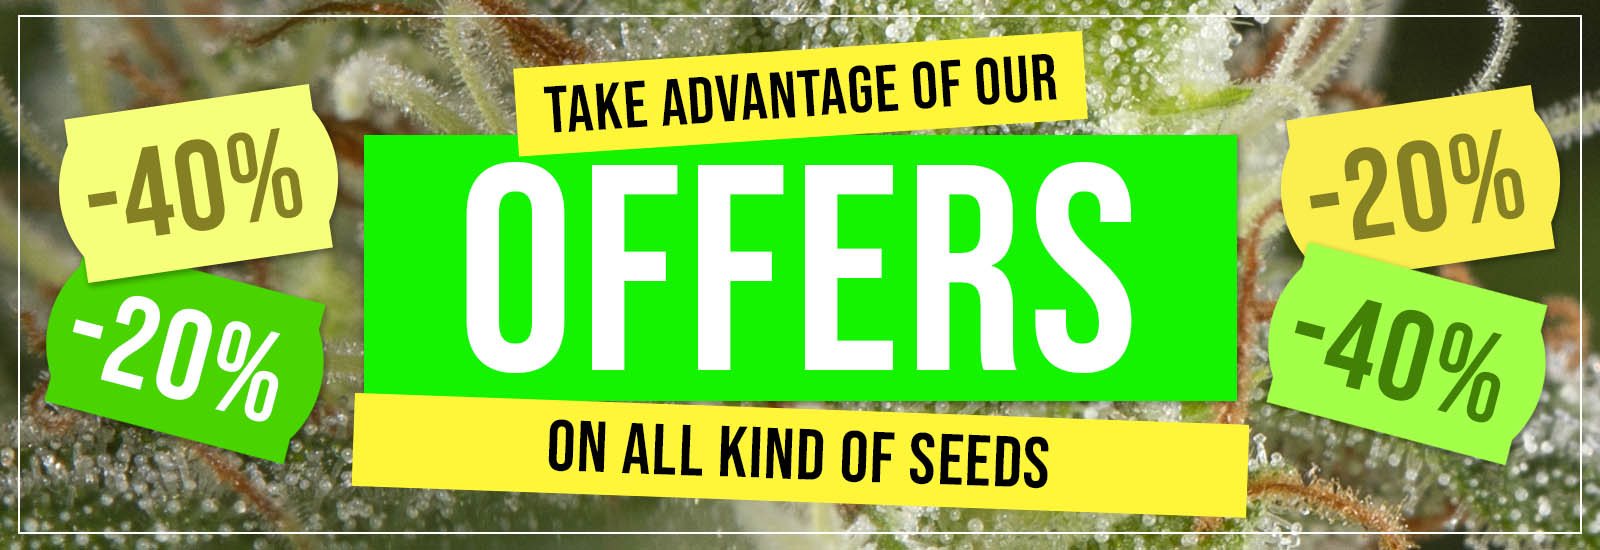 Seeds offer